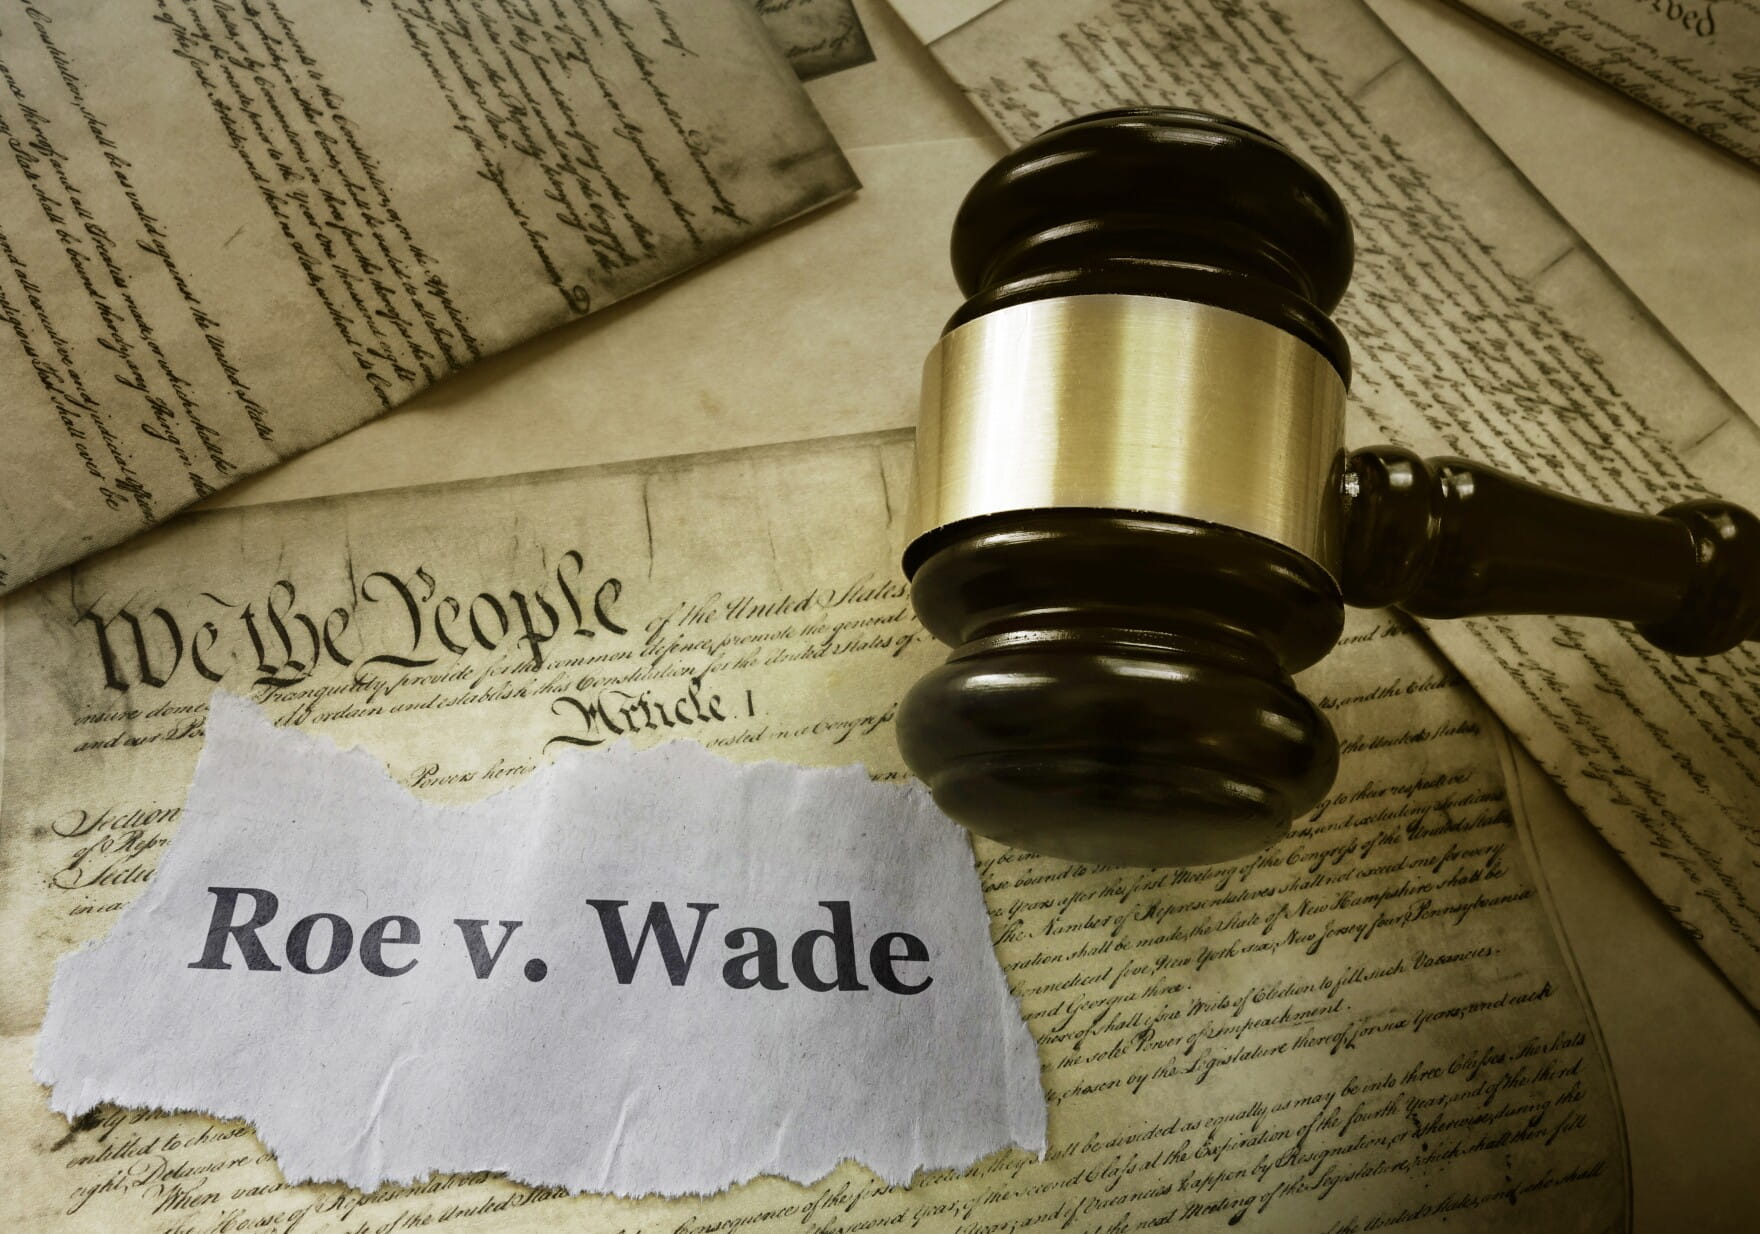 Depiction of Roe v. Wade judgement